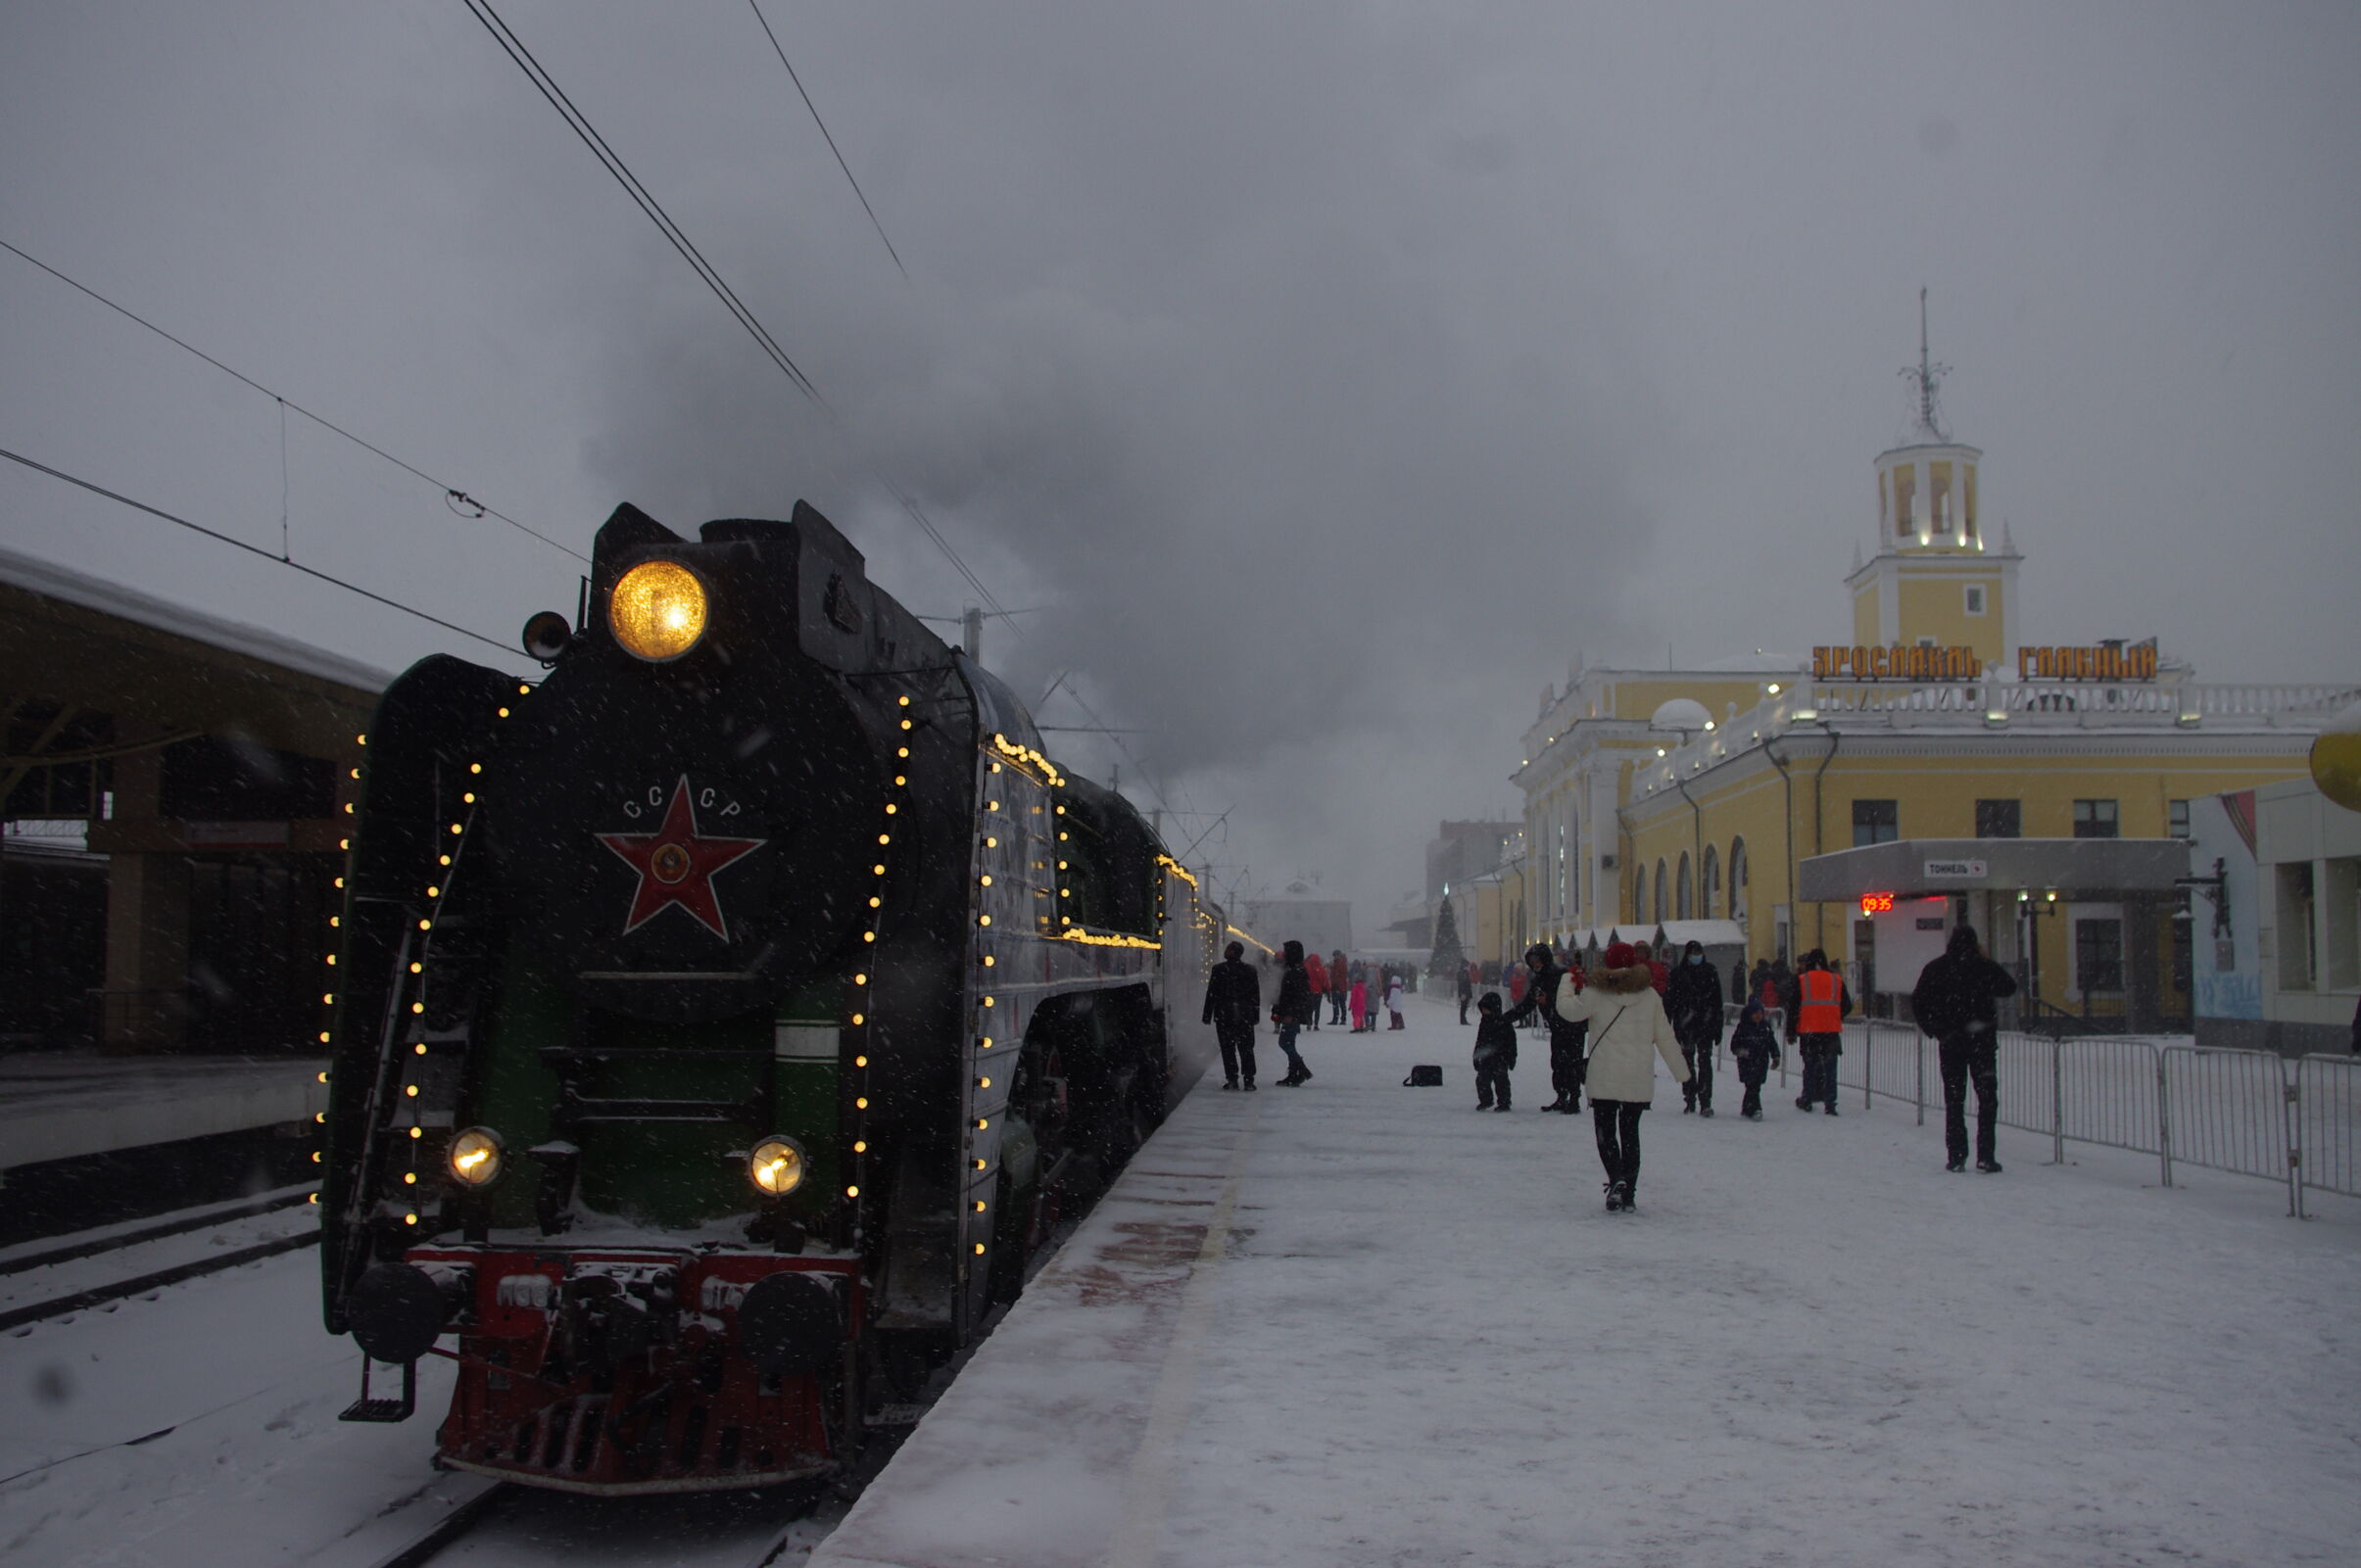 Переславль-Залесский, Ярославль и Ростов вошли в топ-20 железнодорожных направлений с самыми низкими средними чеками из Москвы до конца зимы